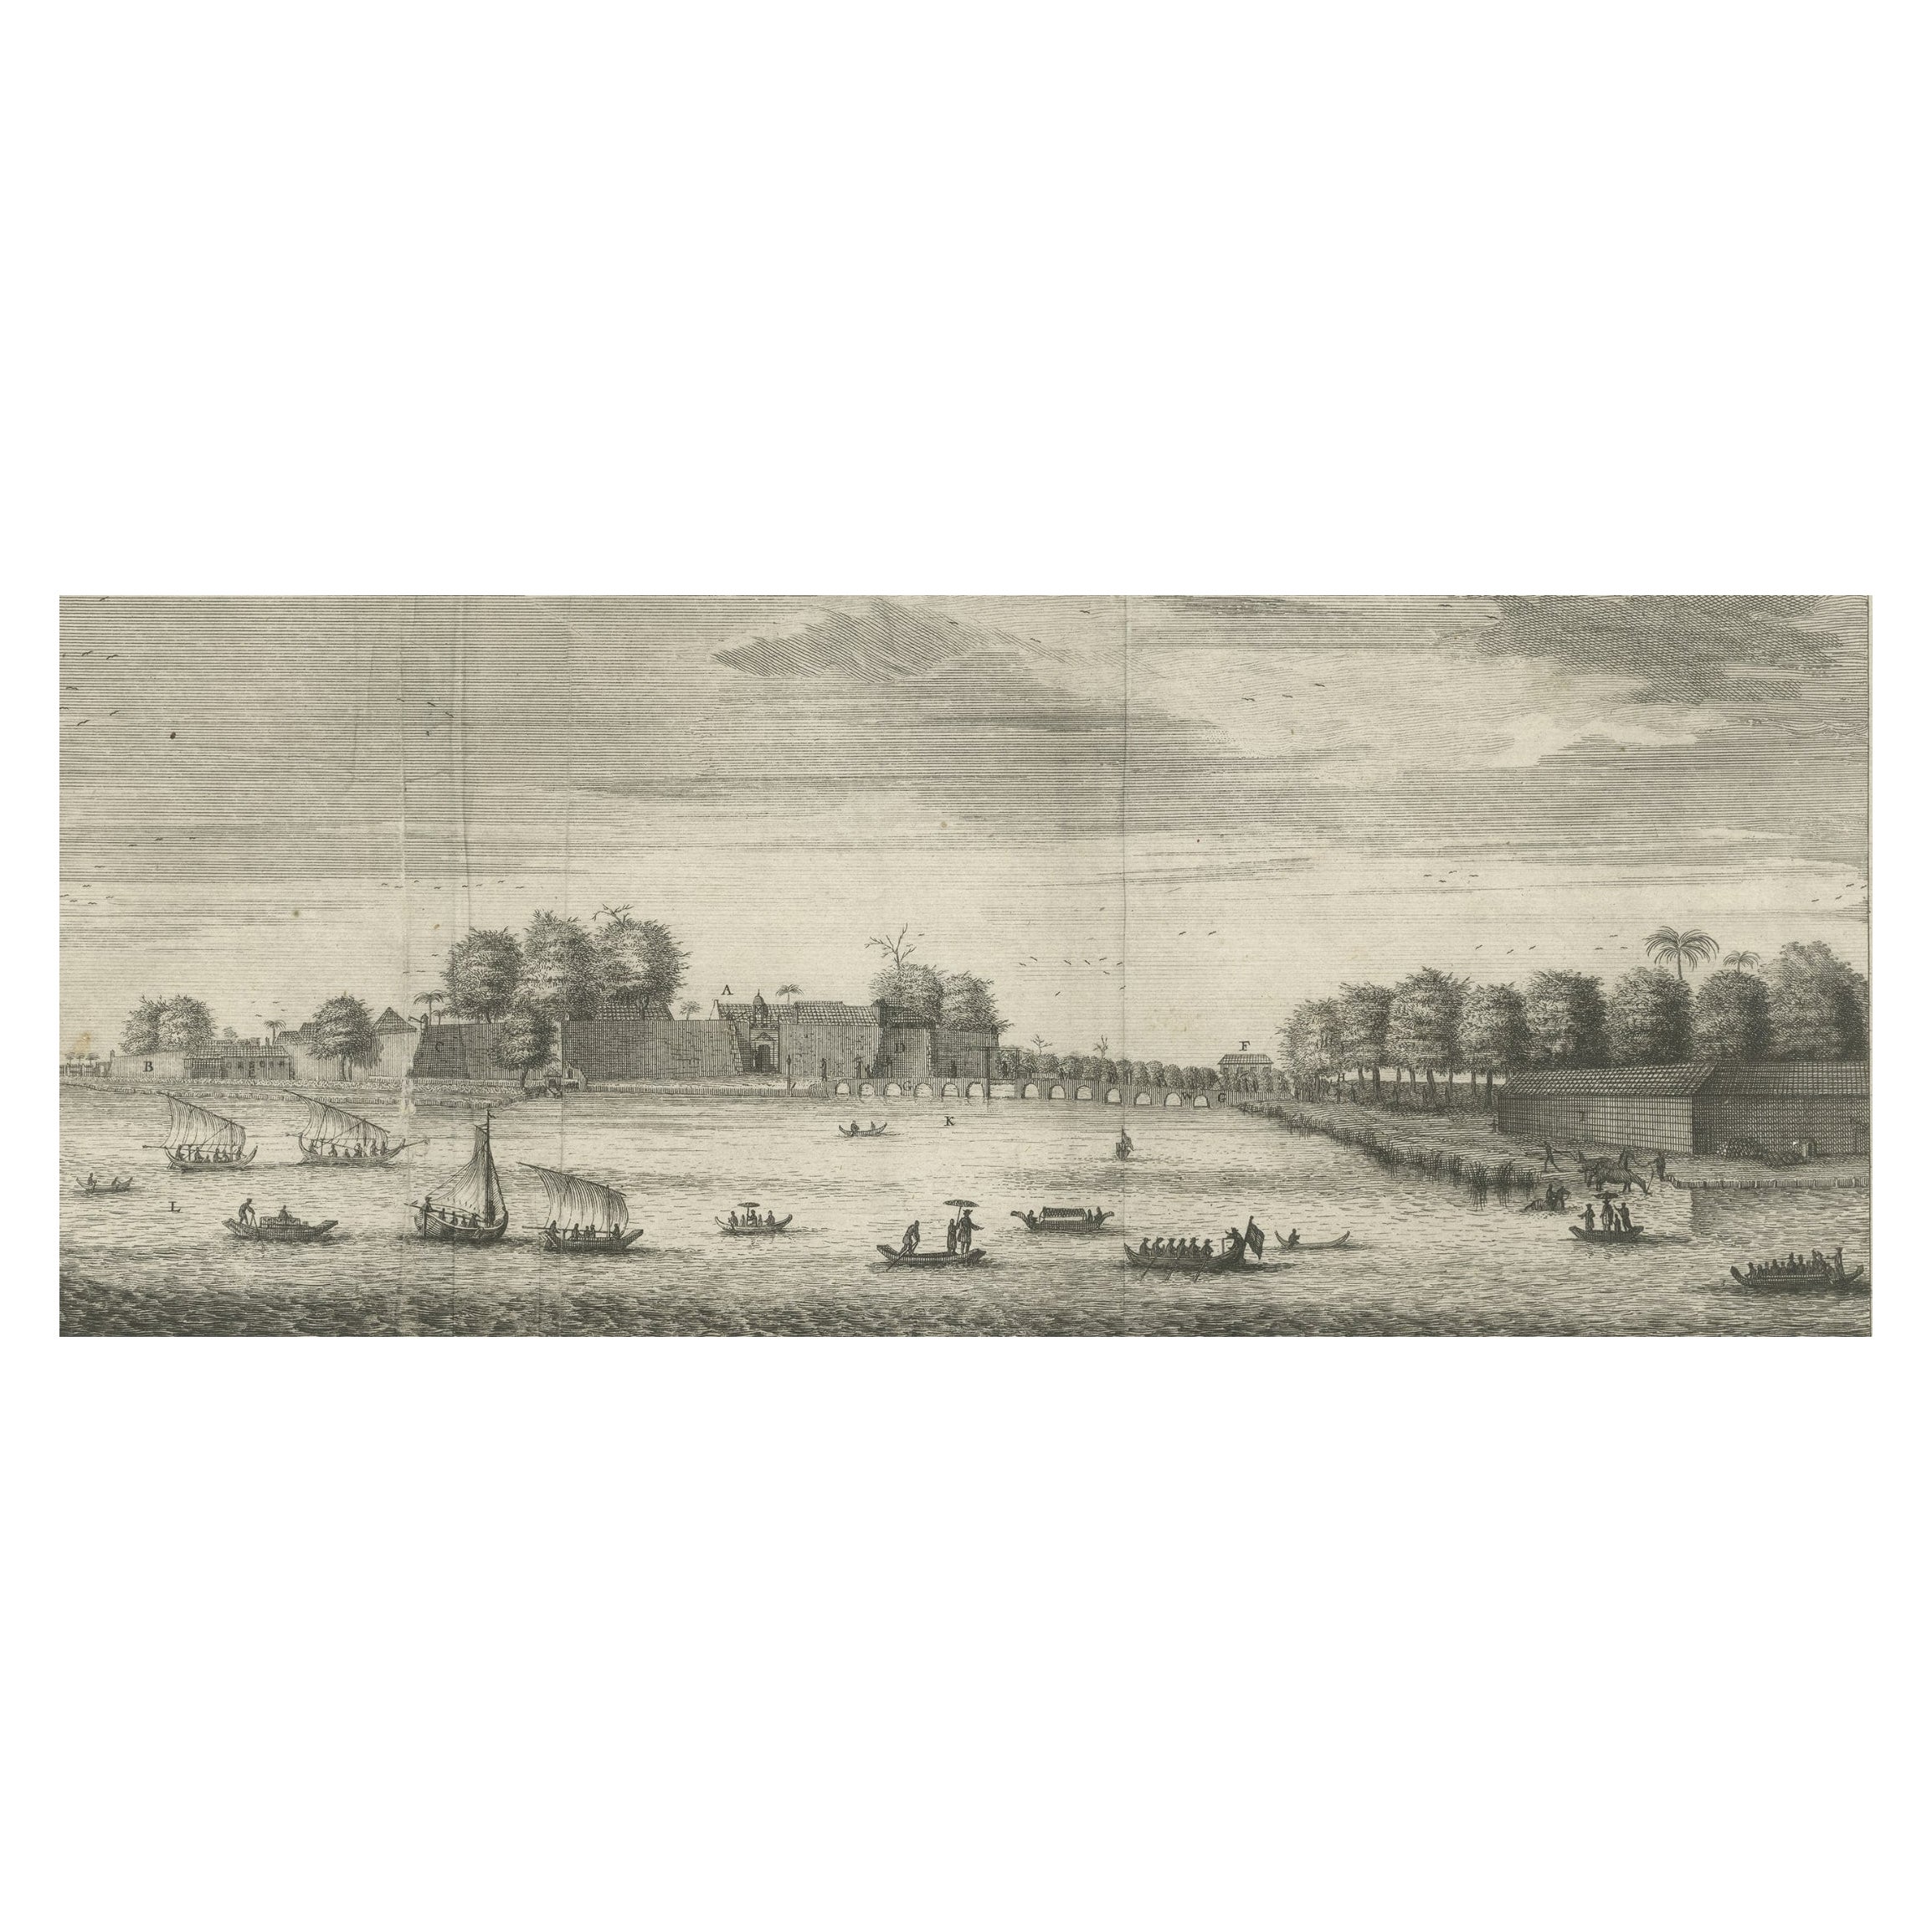 Le château de Batavia (Jakarta) dans les Indes orientales néerlandaises (Indonésie), 1726